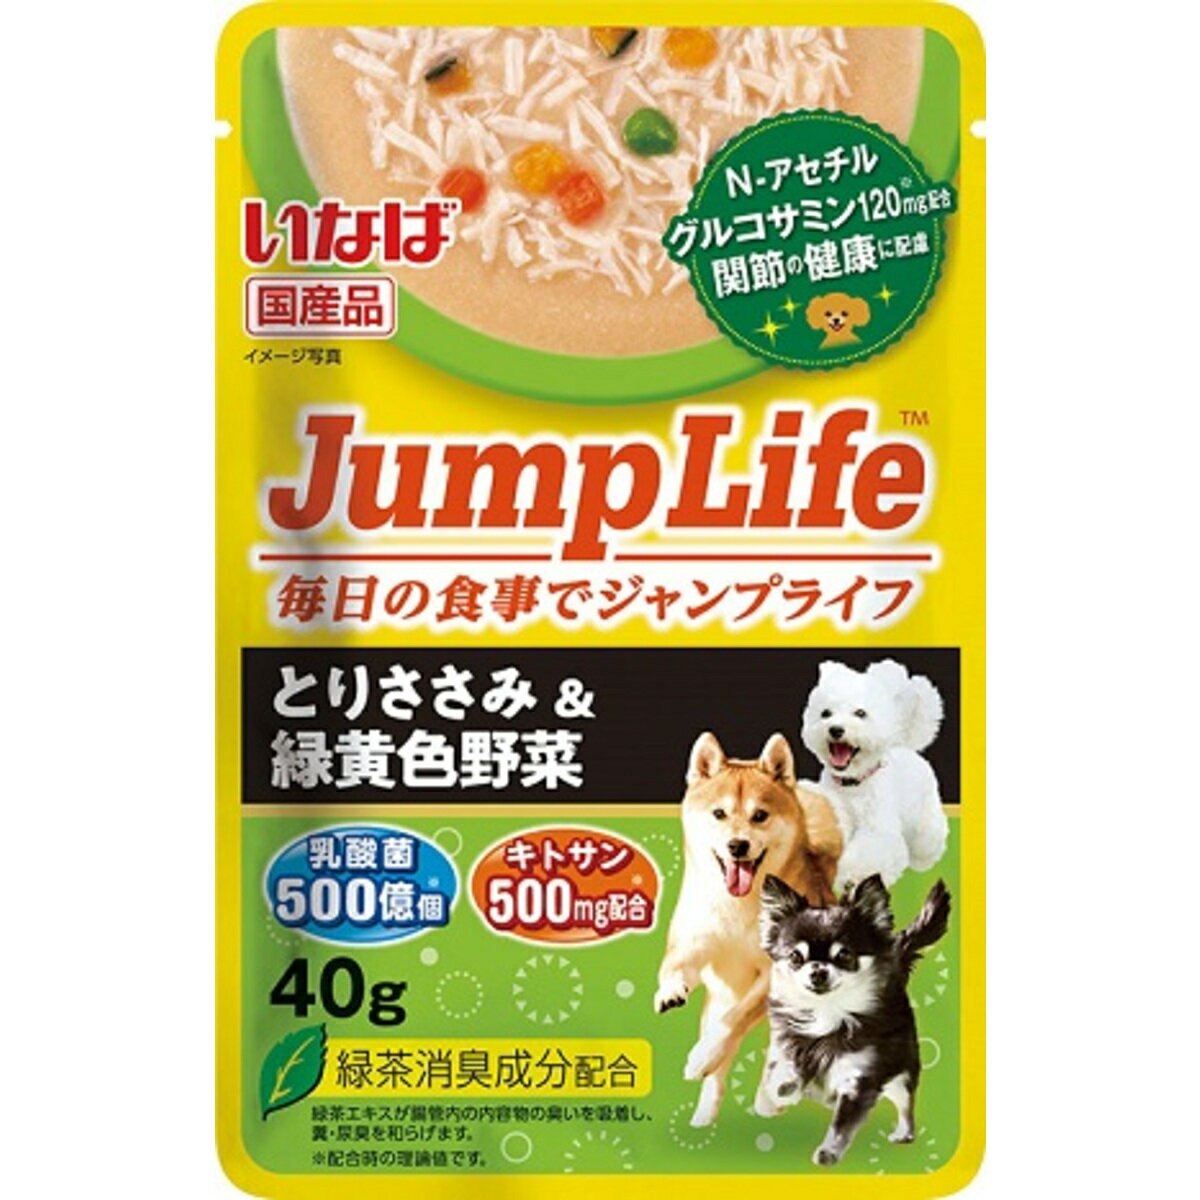 いなば Jump Lifeささみ緑黄色野菜 犬用 40g×96入